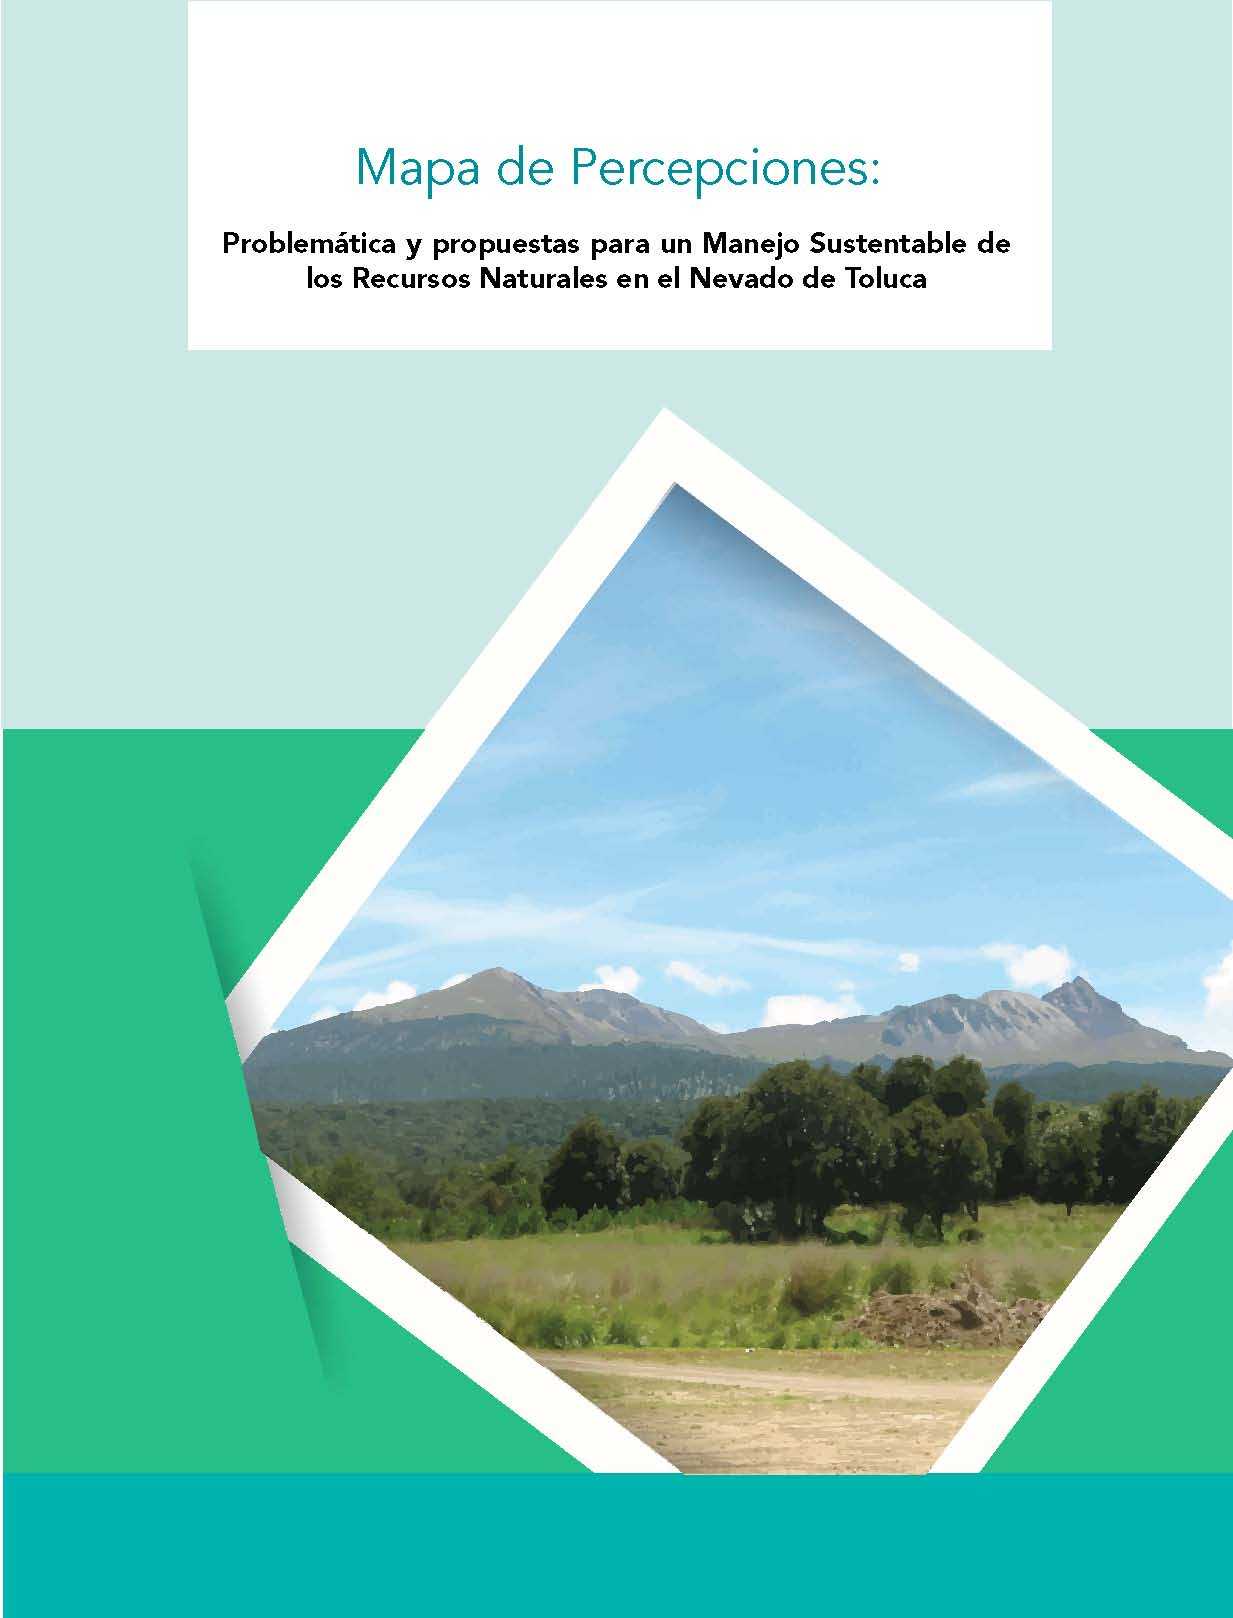 Problemática y propuestas para un Manejo Sustentable de los Recursos Naturales en el Nevado de Toluca